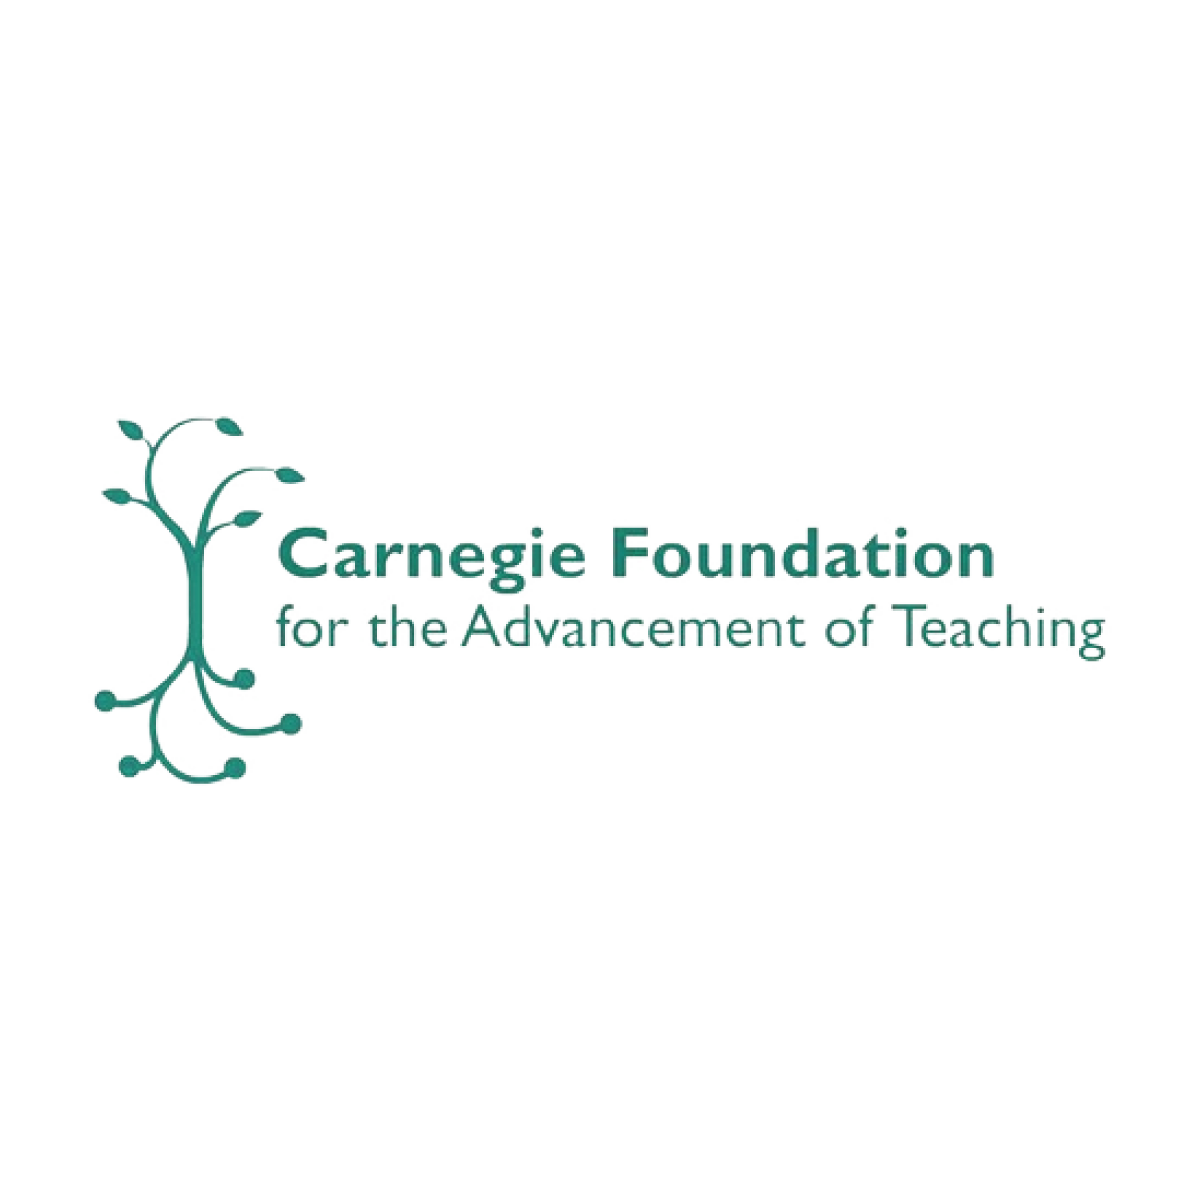 Carnegie Foundation